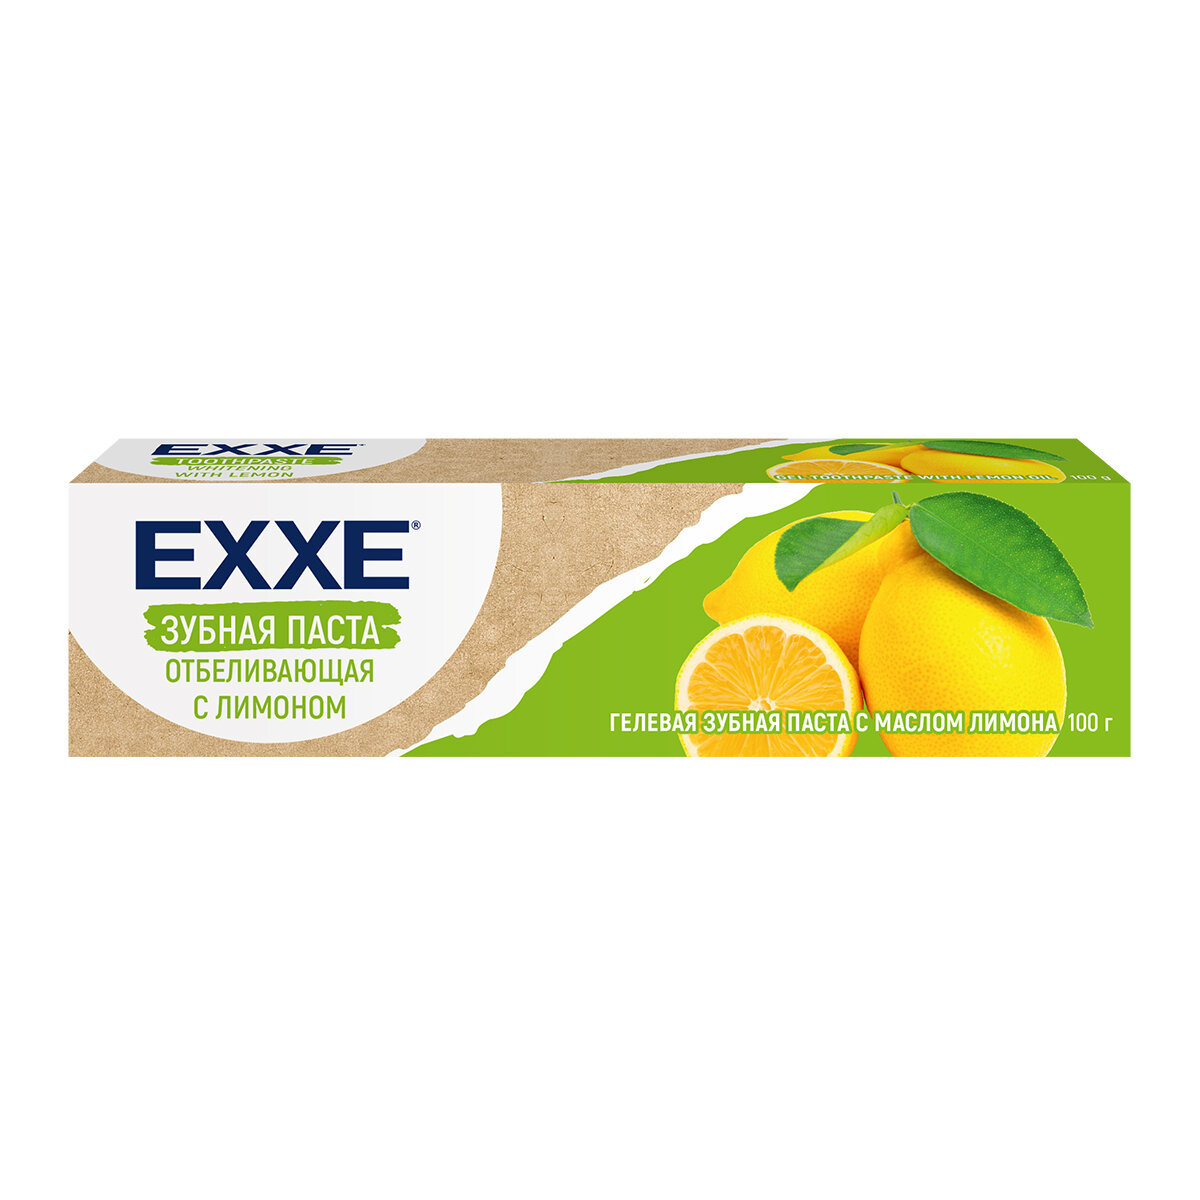 Зубная паста EXXE Отбеливающая с лимоном, 100 г